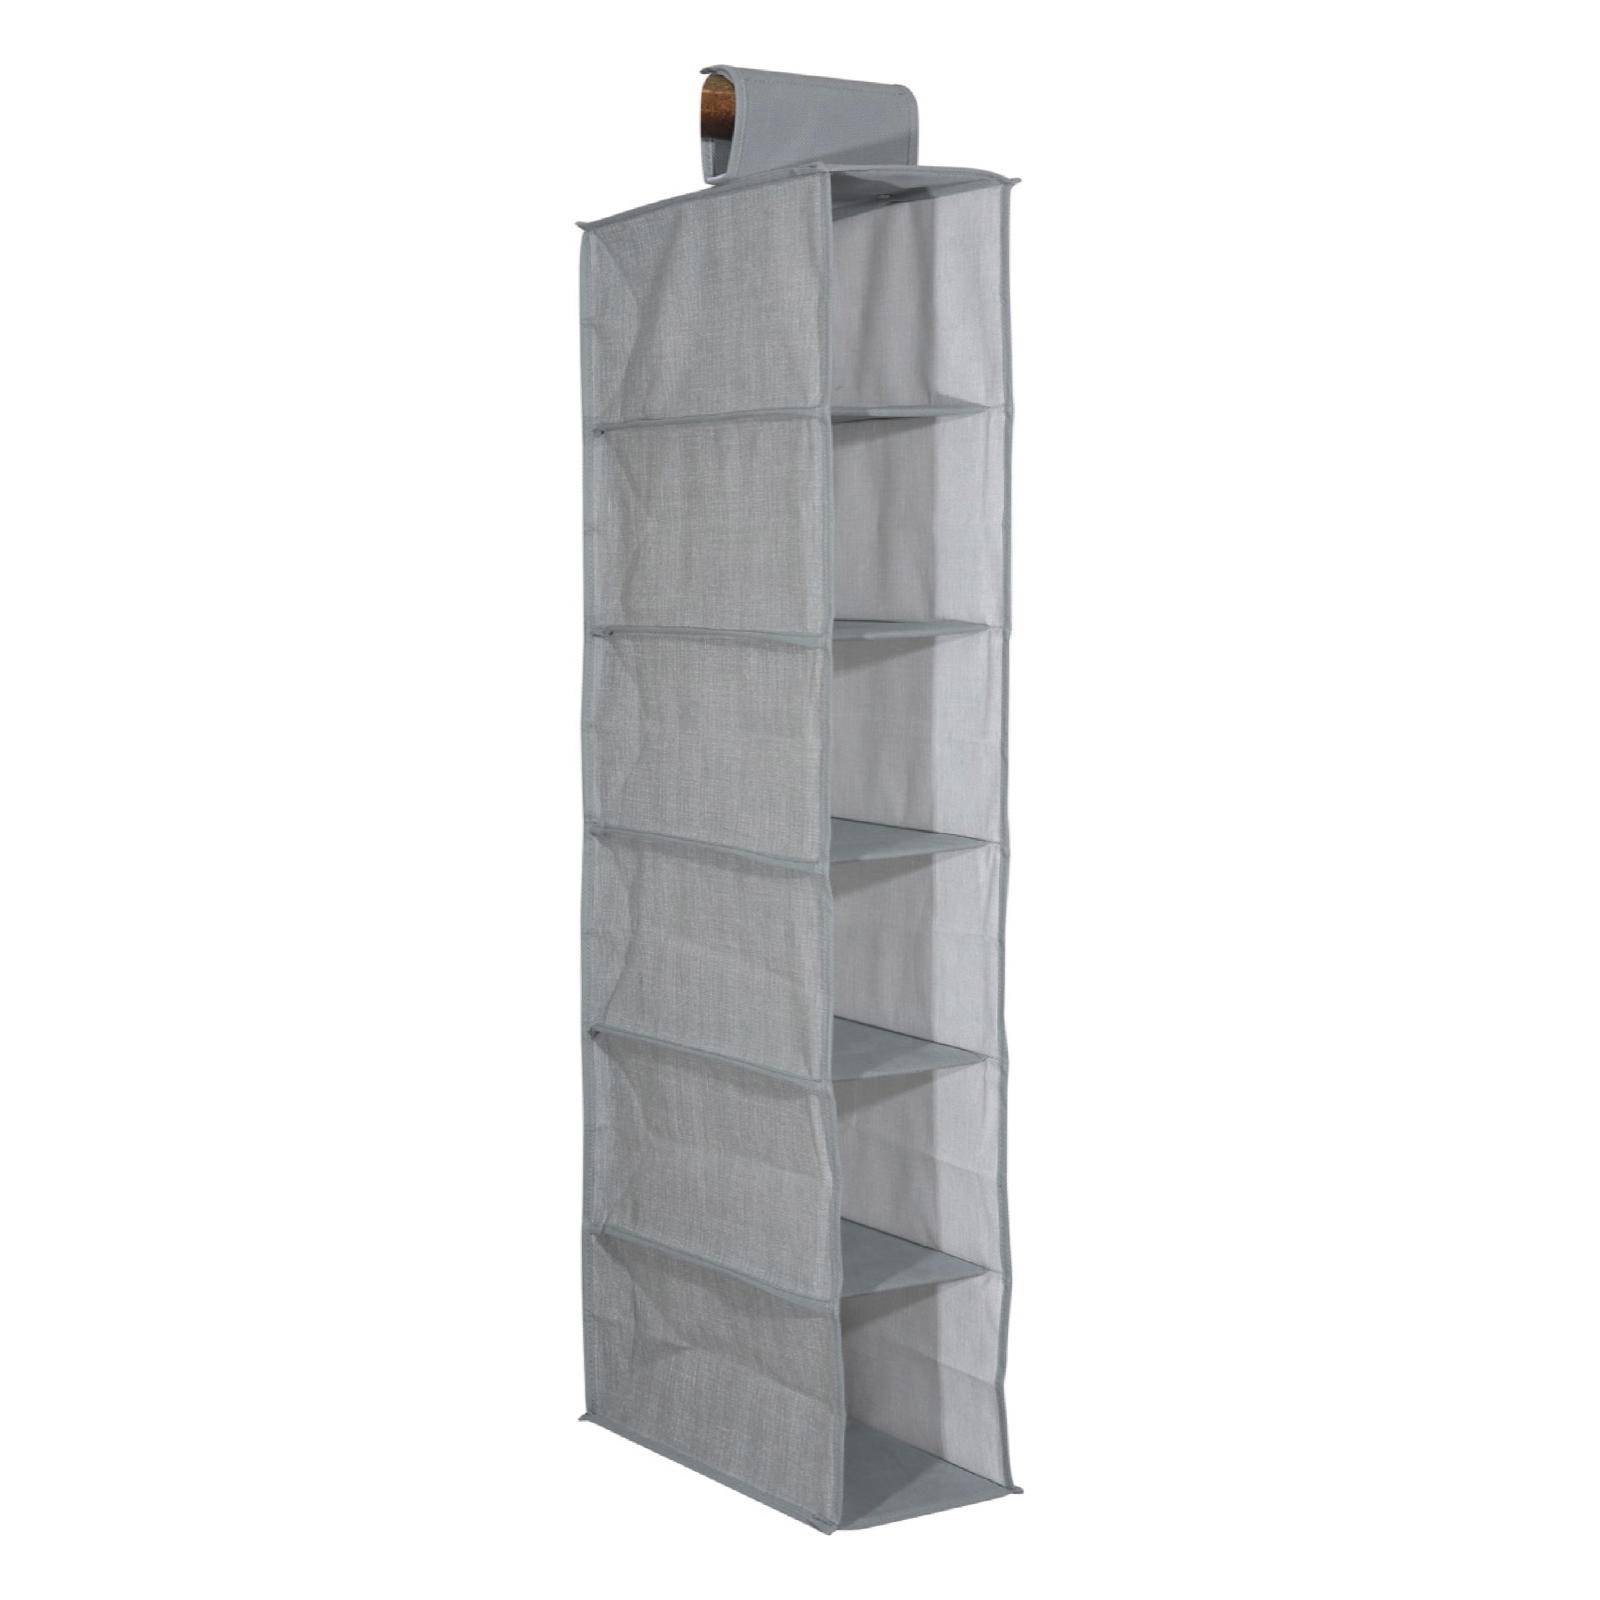 Organizzatore armadio con 6 ripiani profondità 15 cm tessuto grigio